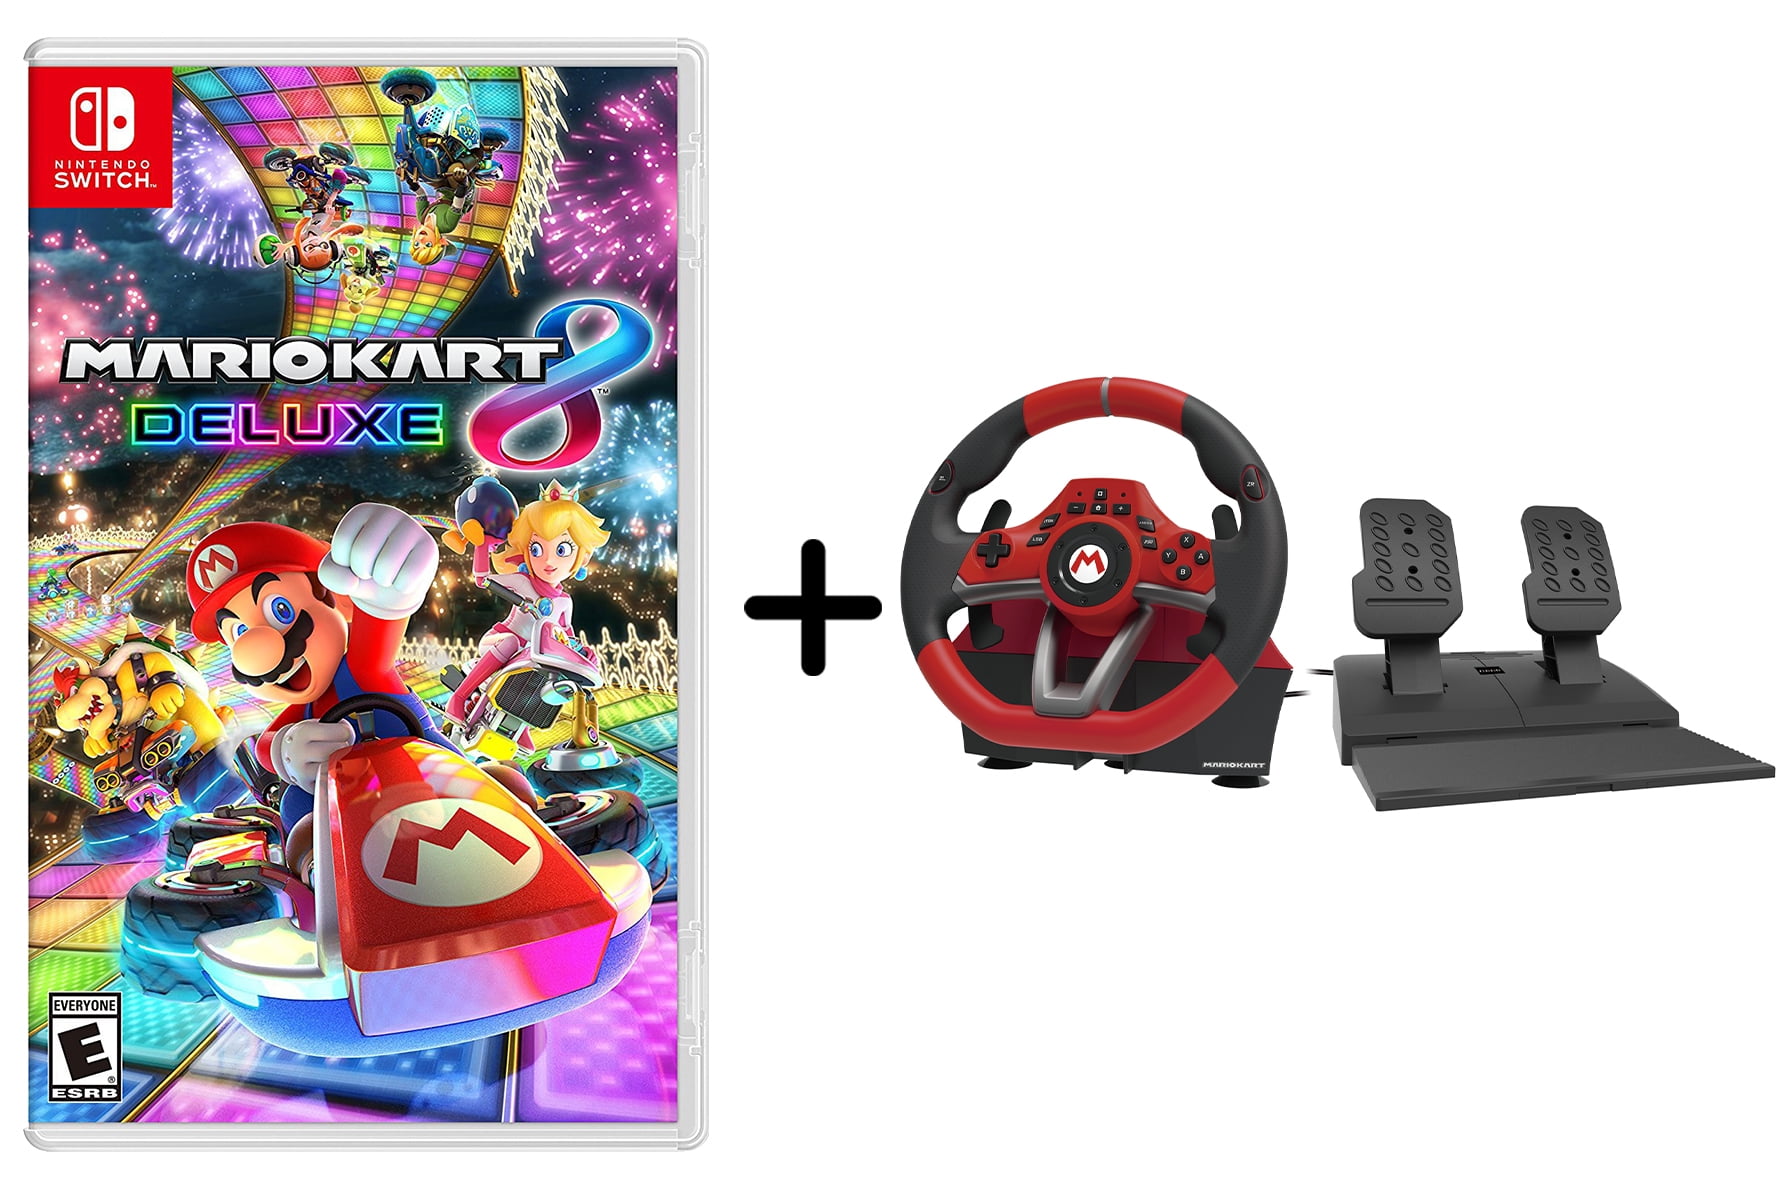 Mario Kart 8 Deluxe + HORI Mario Kart Racing Wheel Pro Deluxe